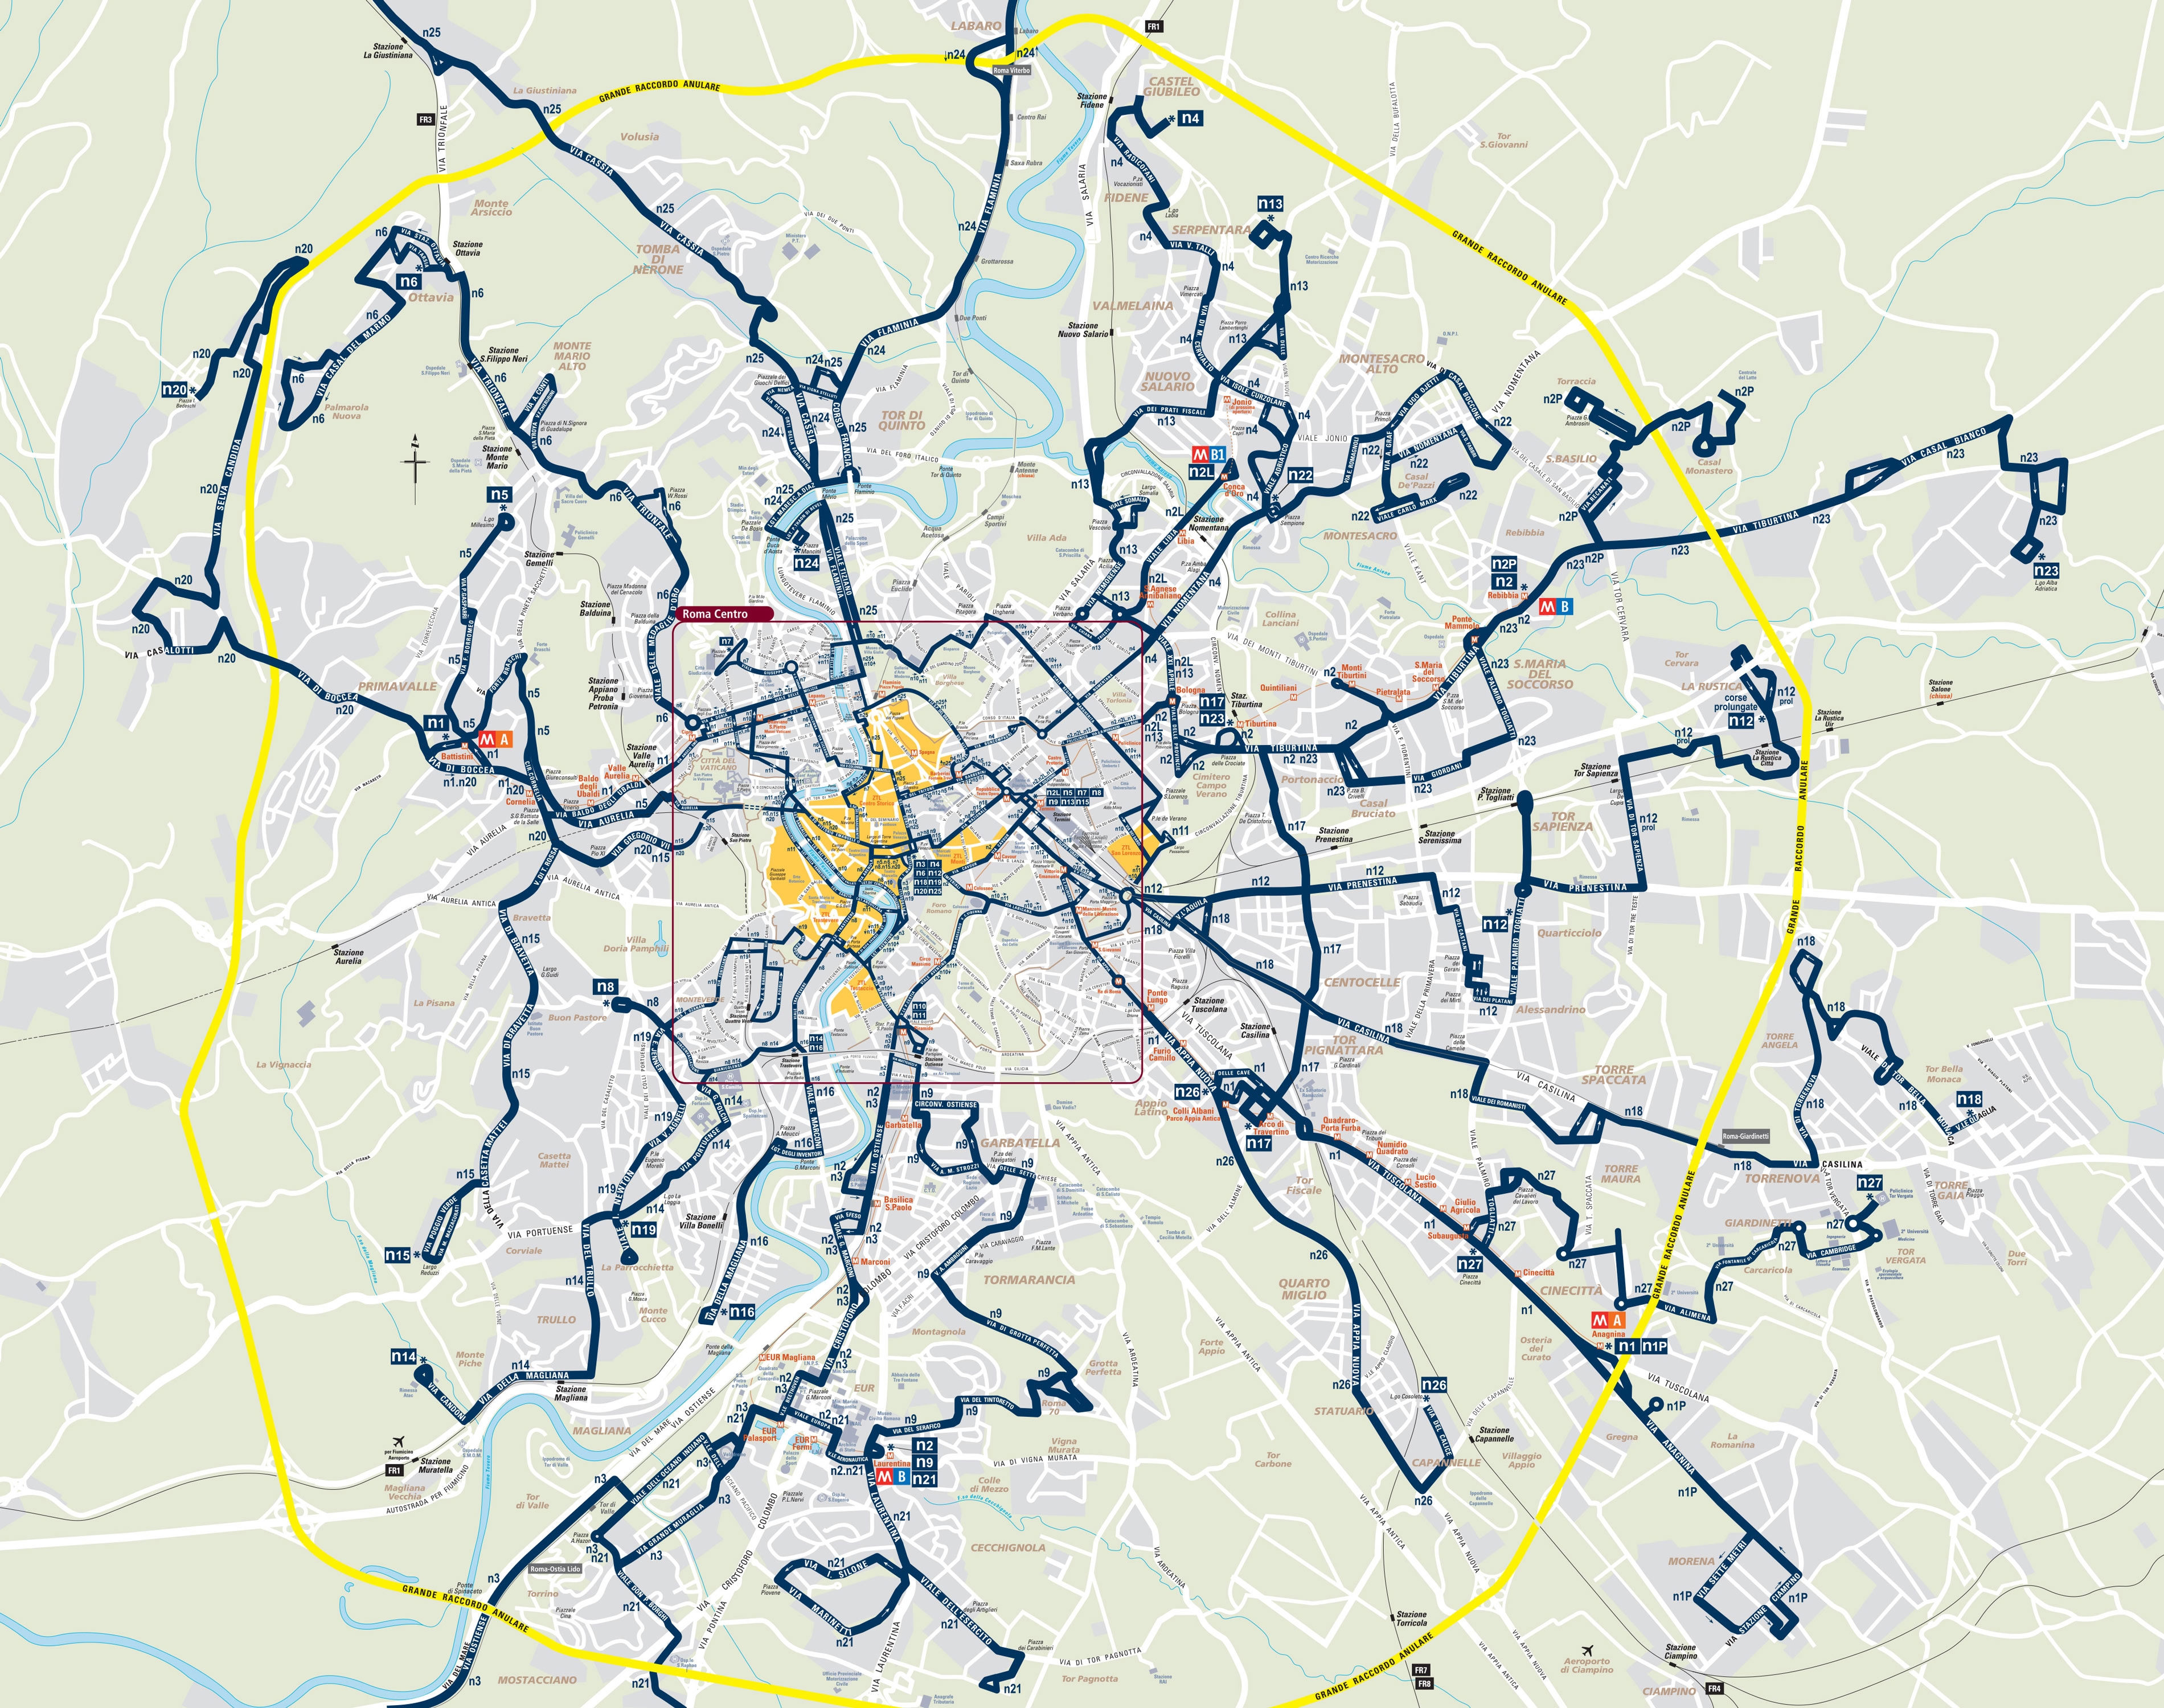 Bus netzplan und karte von Rom stationen und linien